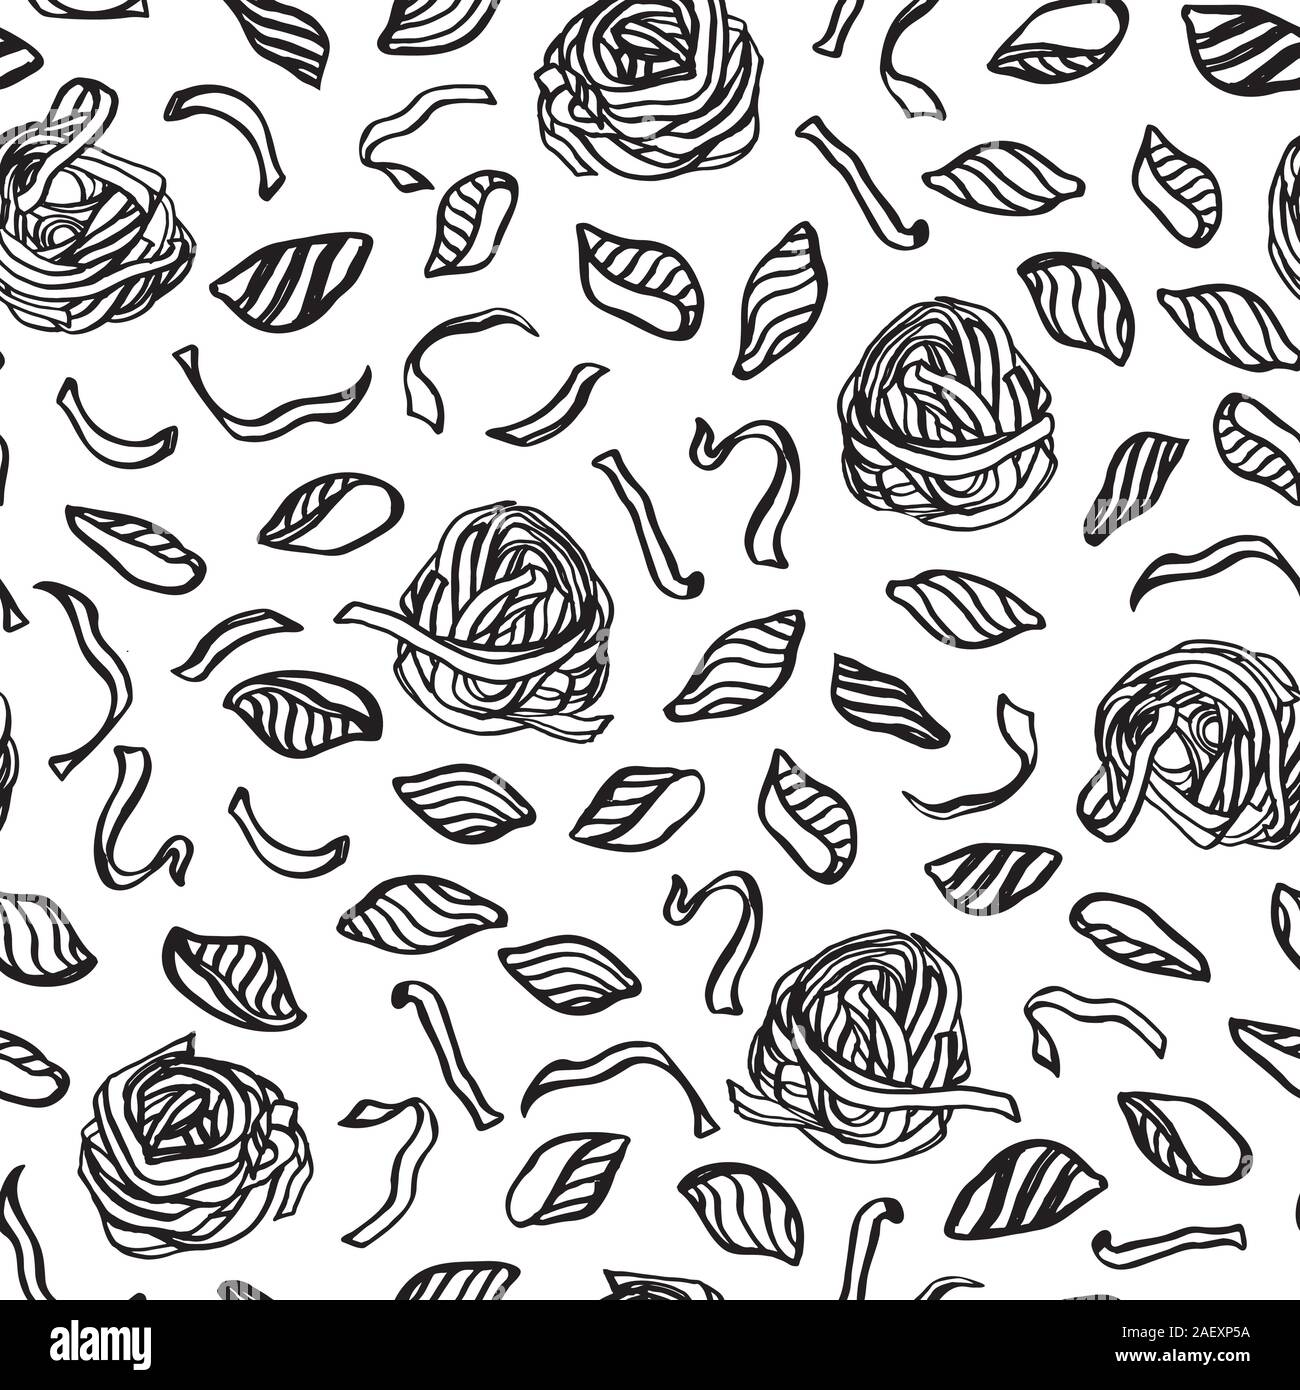 Vettore disegnati a mano doodle noodle pattern con pasta italiana e a base di noodle nido. In casa yummy design per il ristorante, cucina, scheda del menu, di cucina e di imballaggi alimentari. Illustrazione Vettoriale